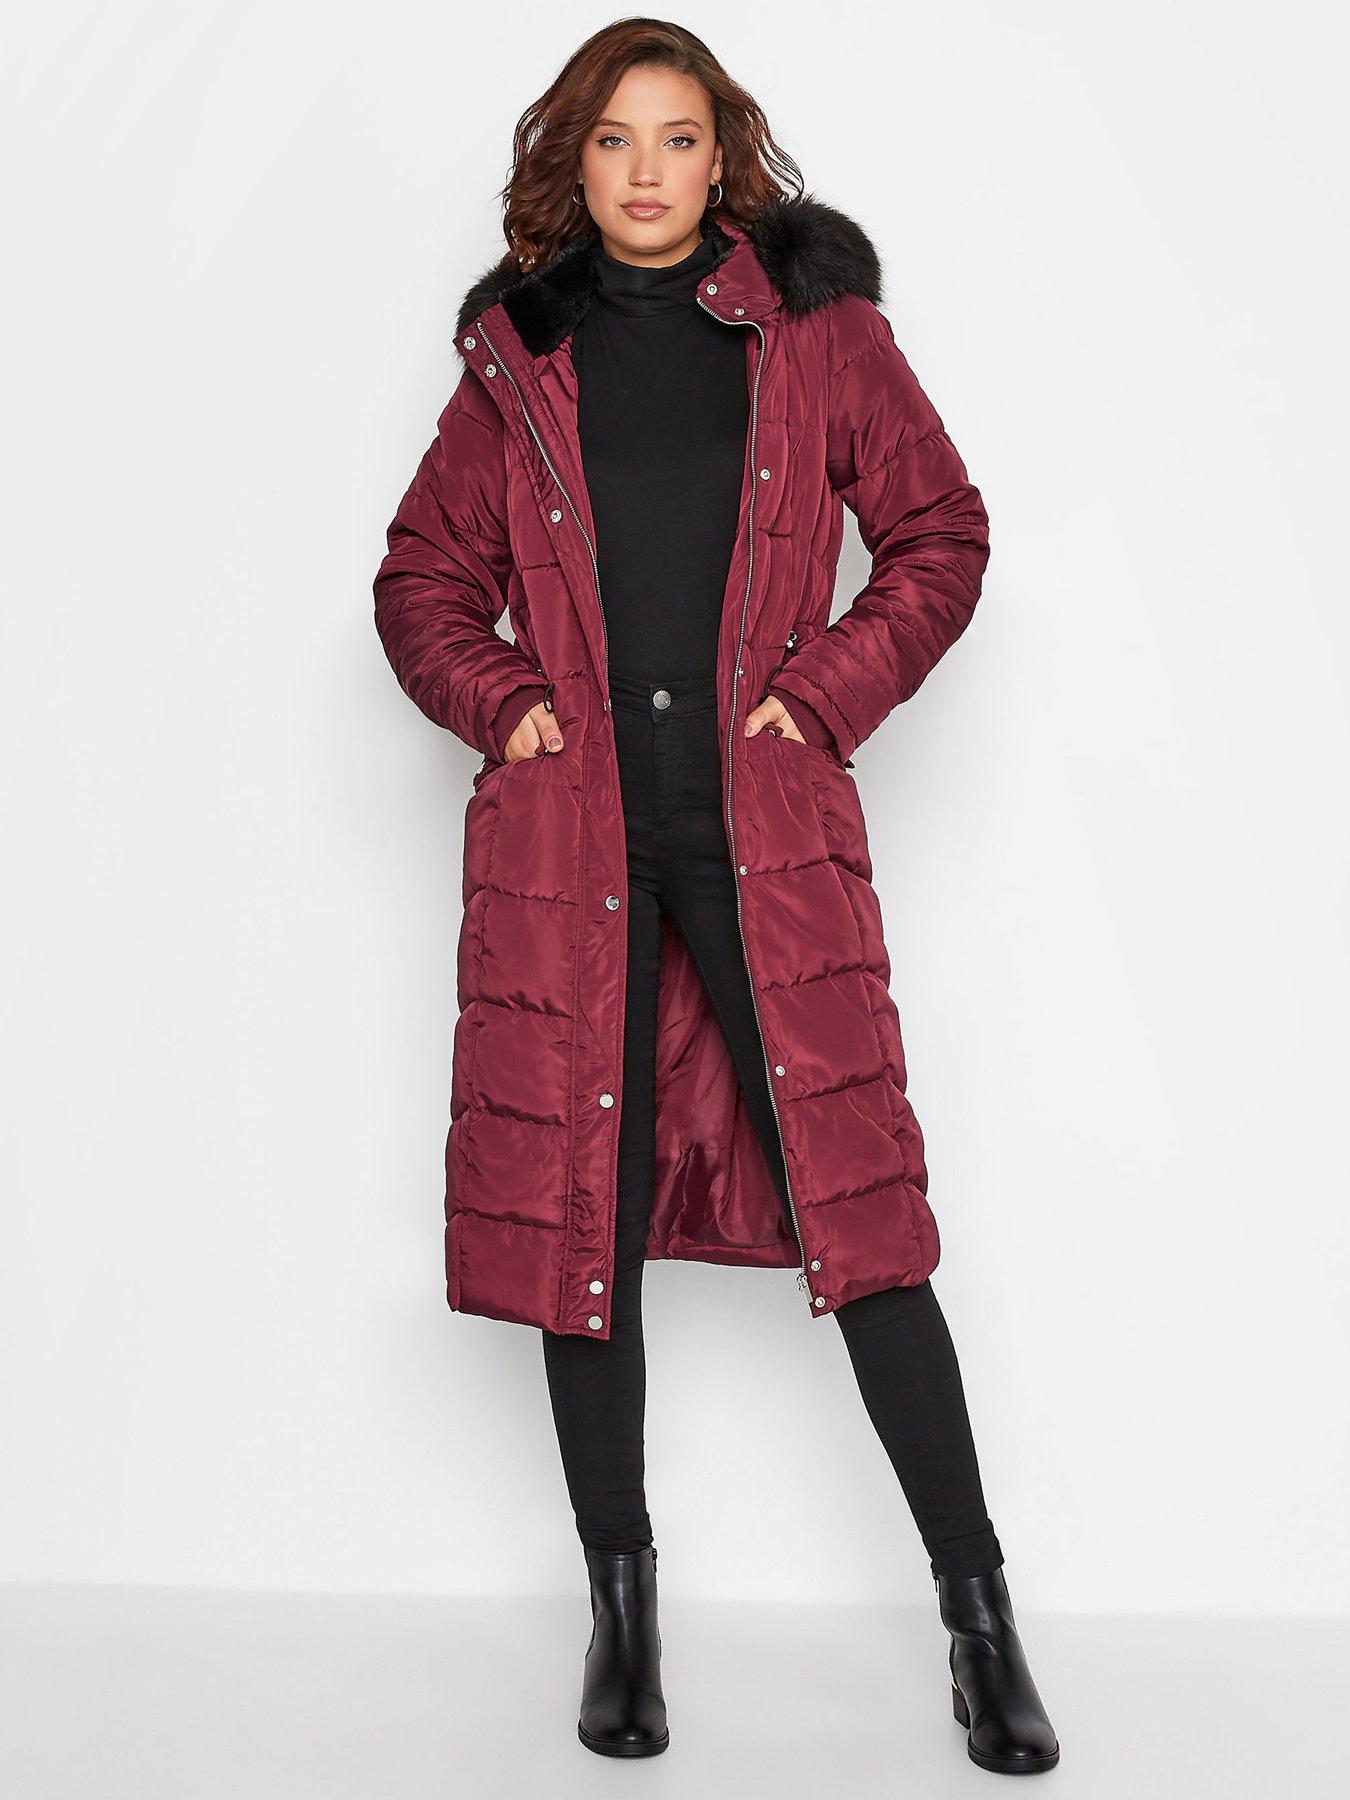 discount 58% Brown 40                  EU Morgan Long coat WOMEN FASHION Coats Long coat Fur 